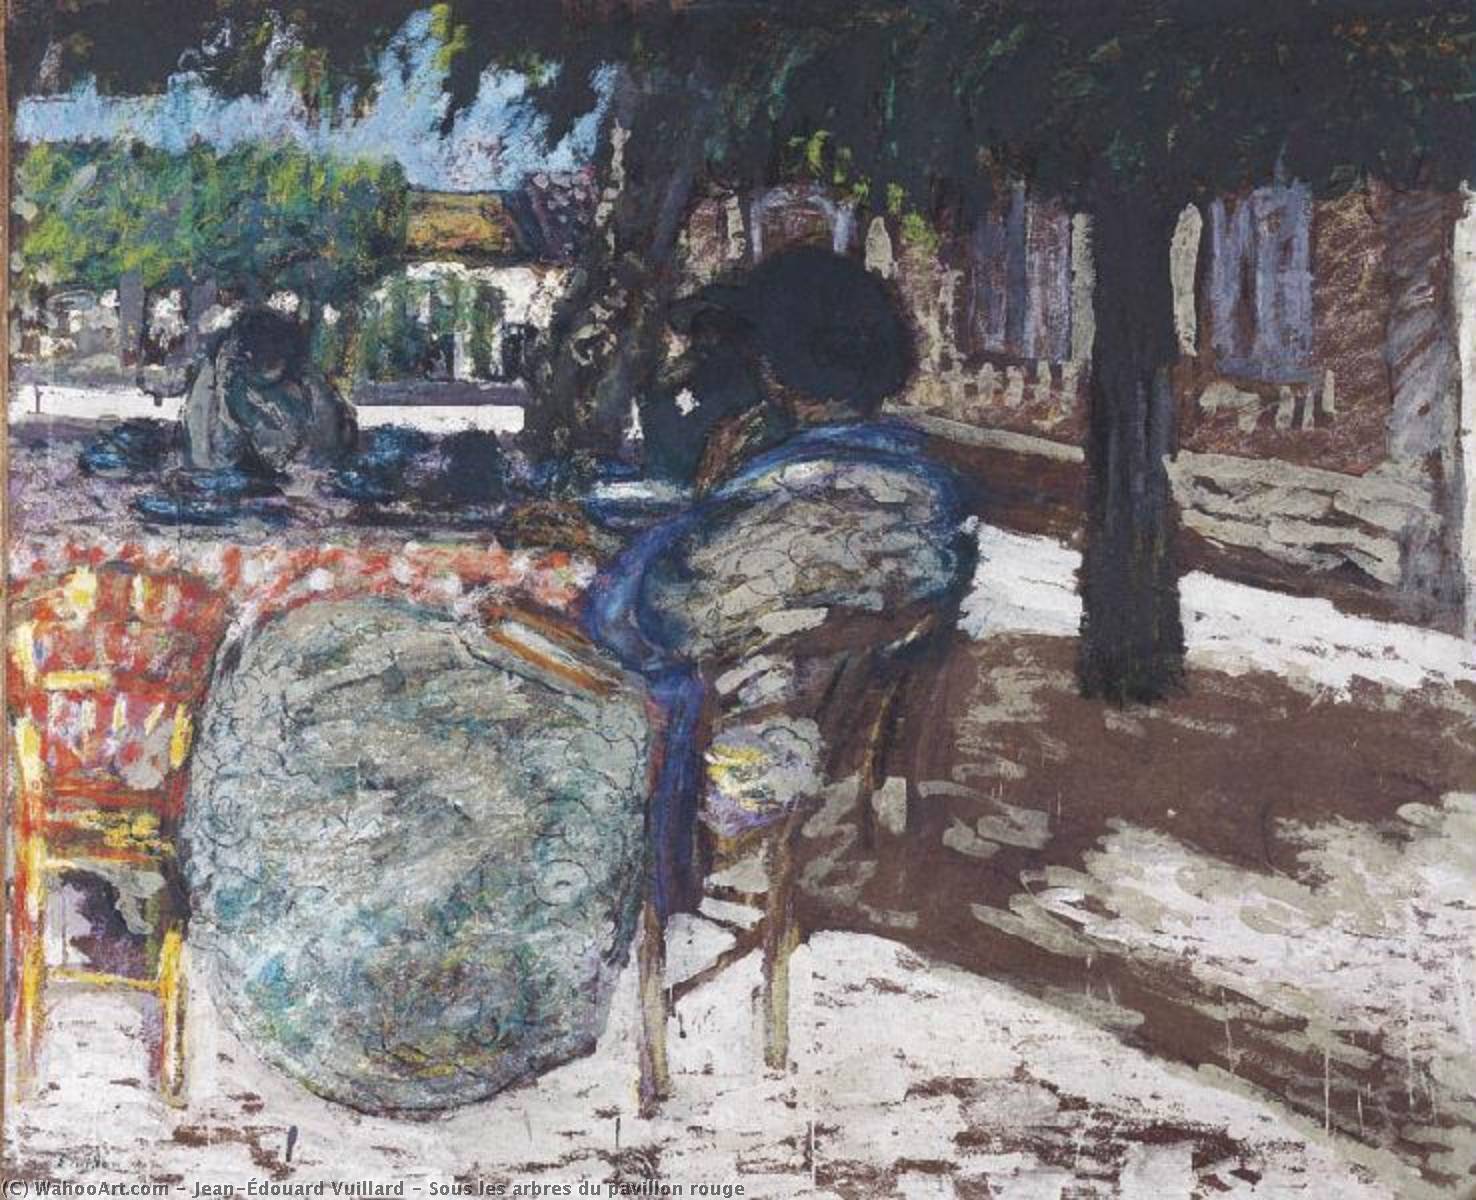 Wikioo.org - Bách khoa toàn thư về mỹ thuật - Vẽ tranh, Tác phẩm nghệ thuật Jean Edouard Vuillard - Sous les arbres du pavillon rouge